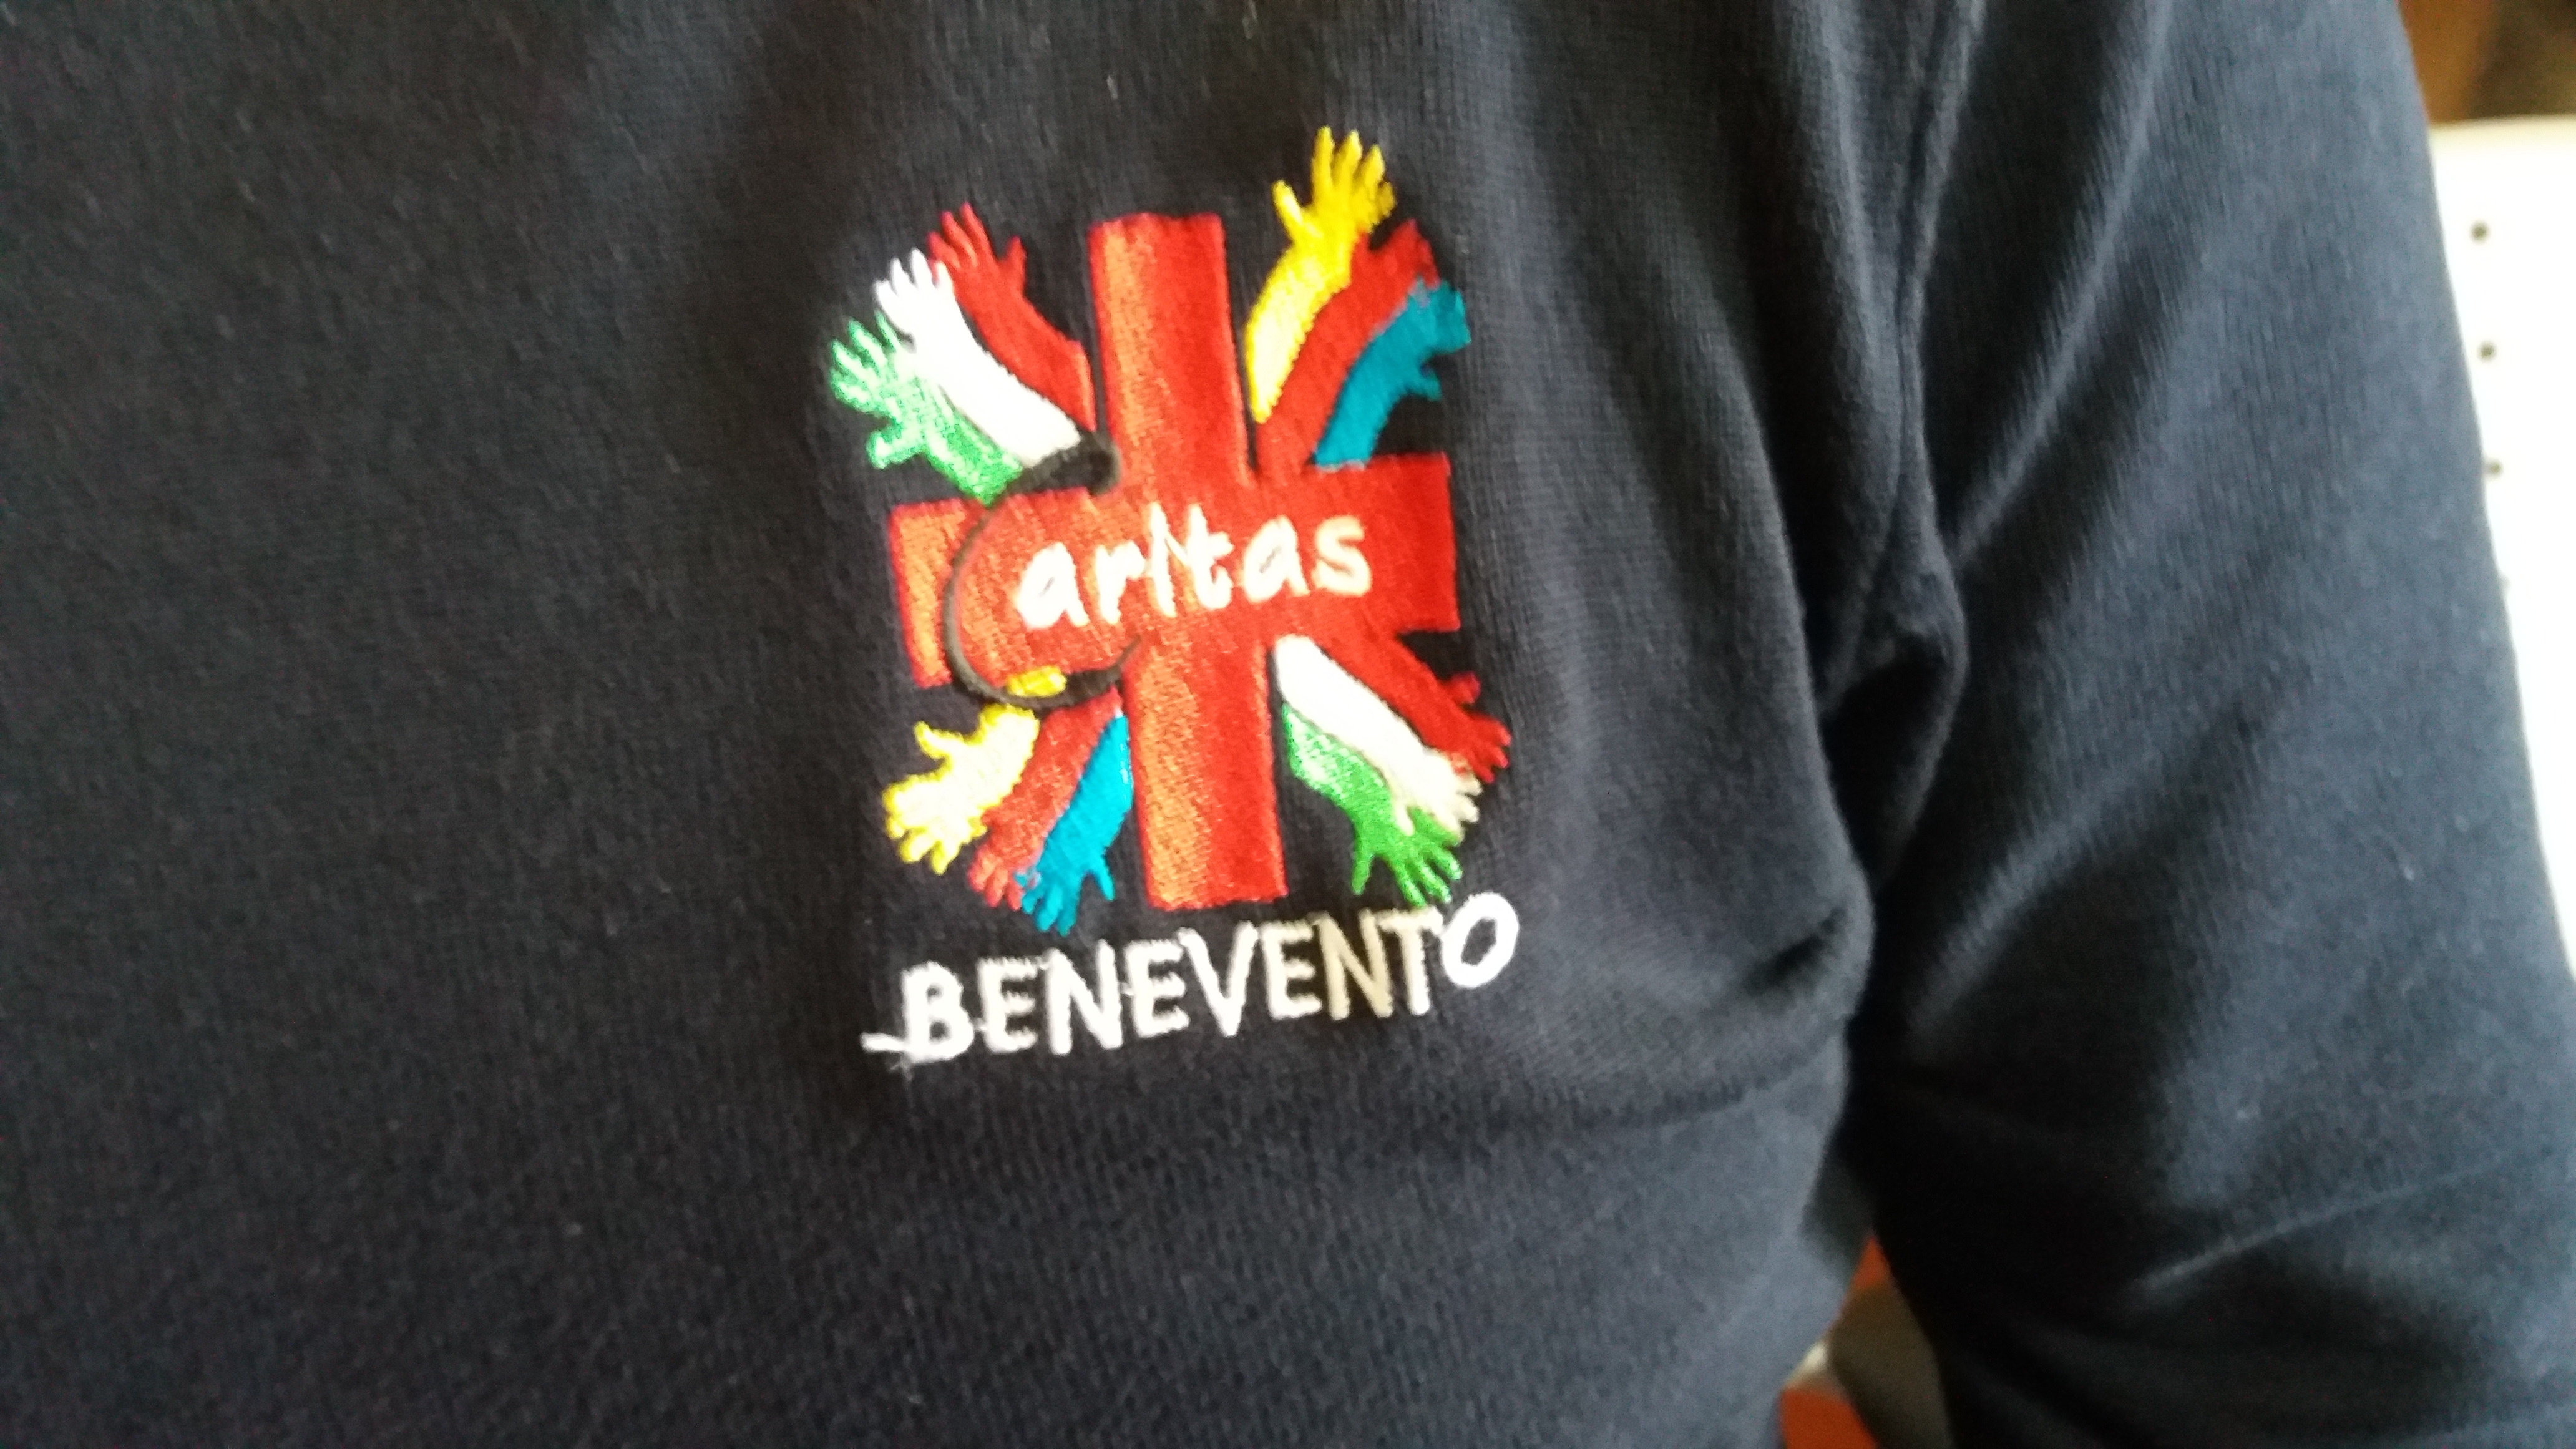 Benevento| Gioco d’azzardo, la Caritas scende in strada